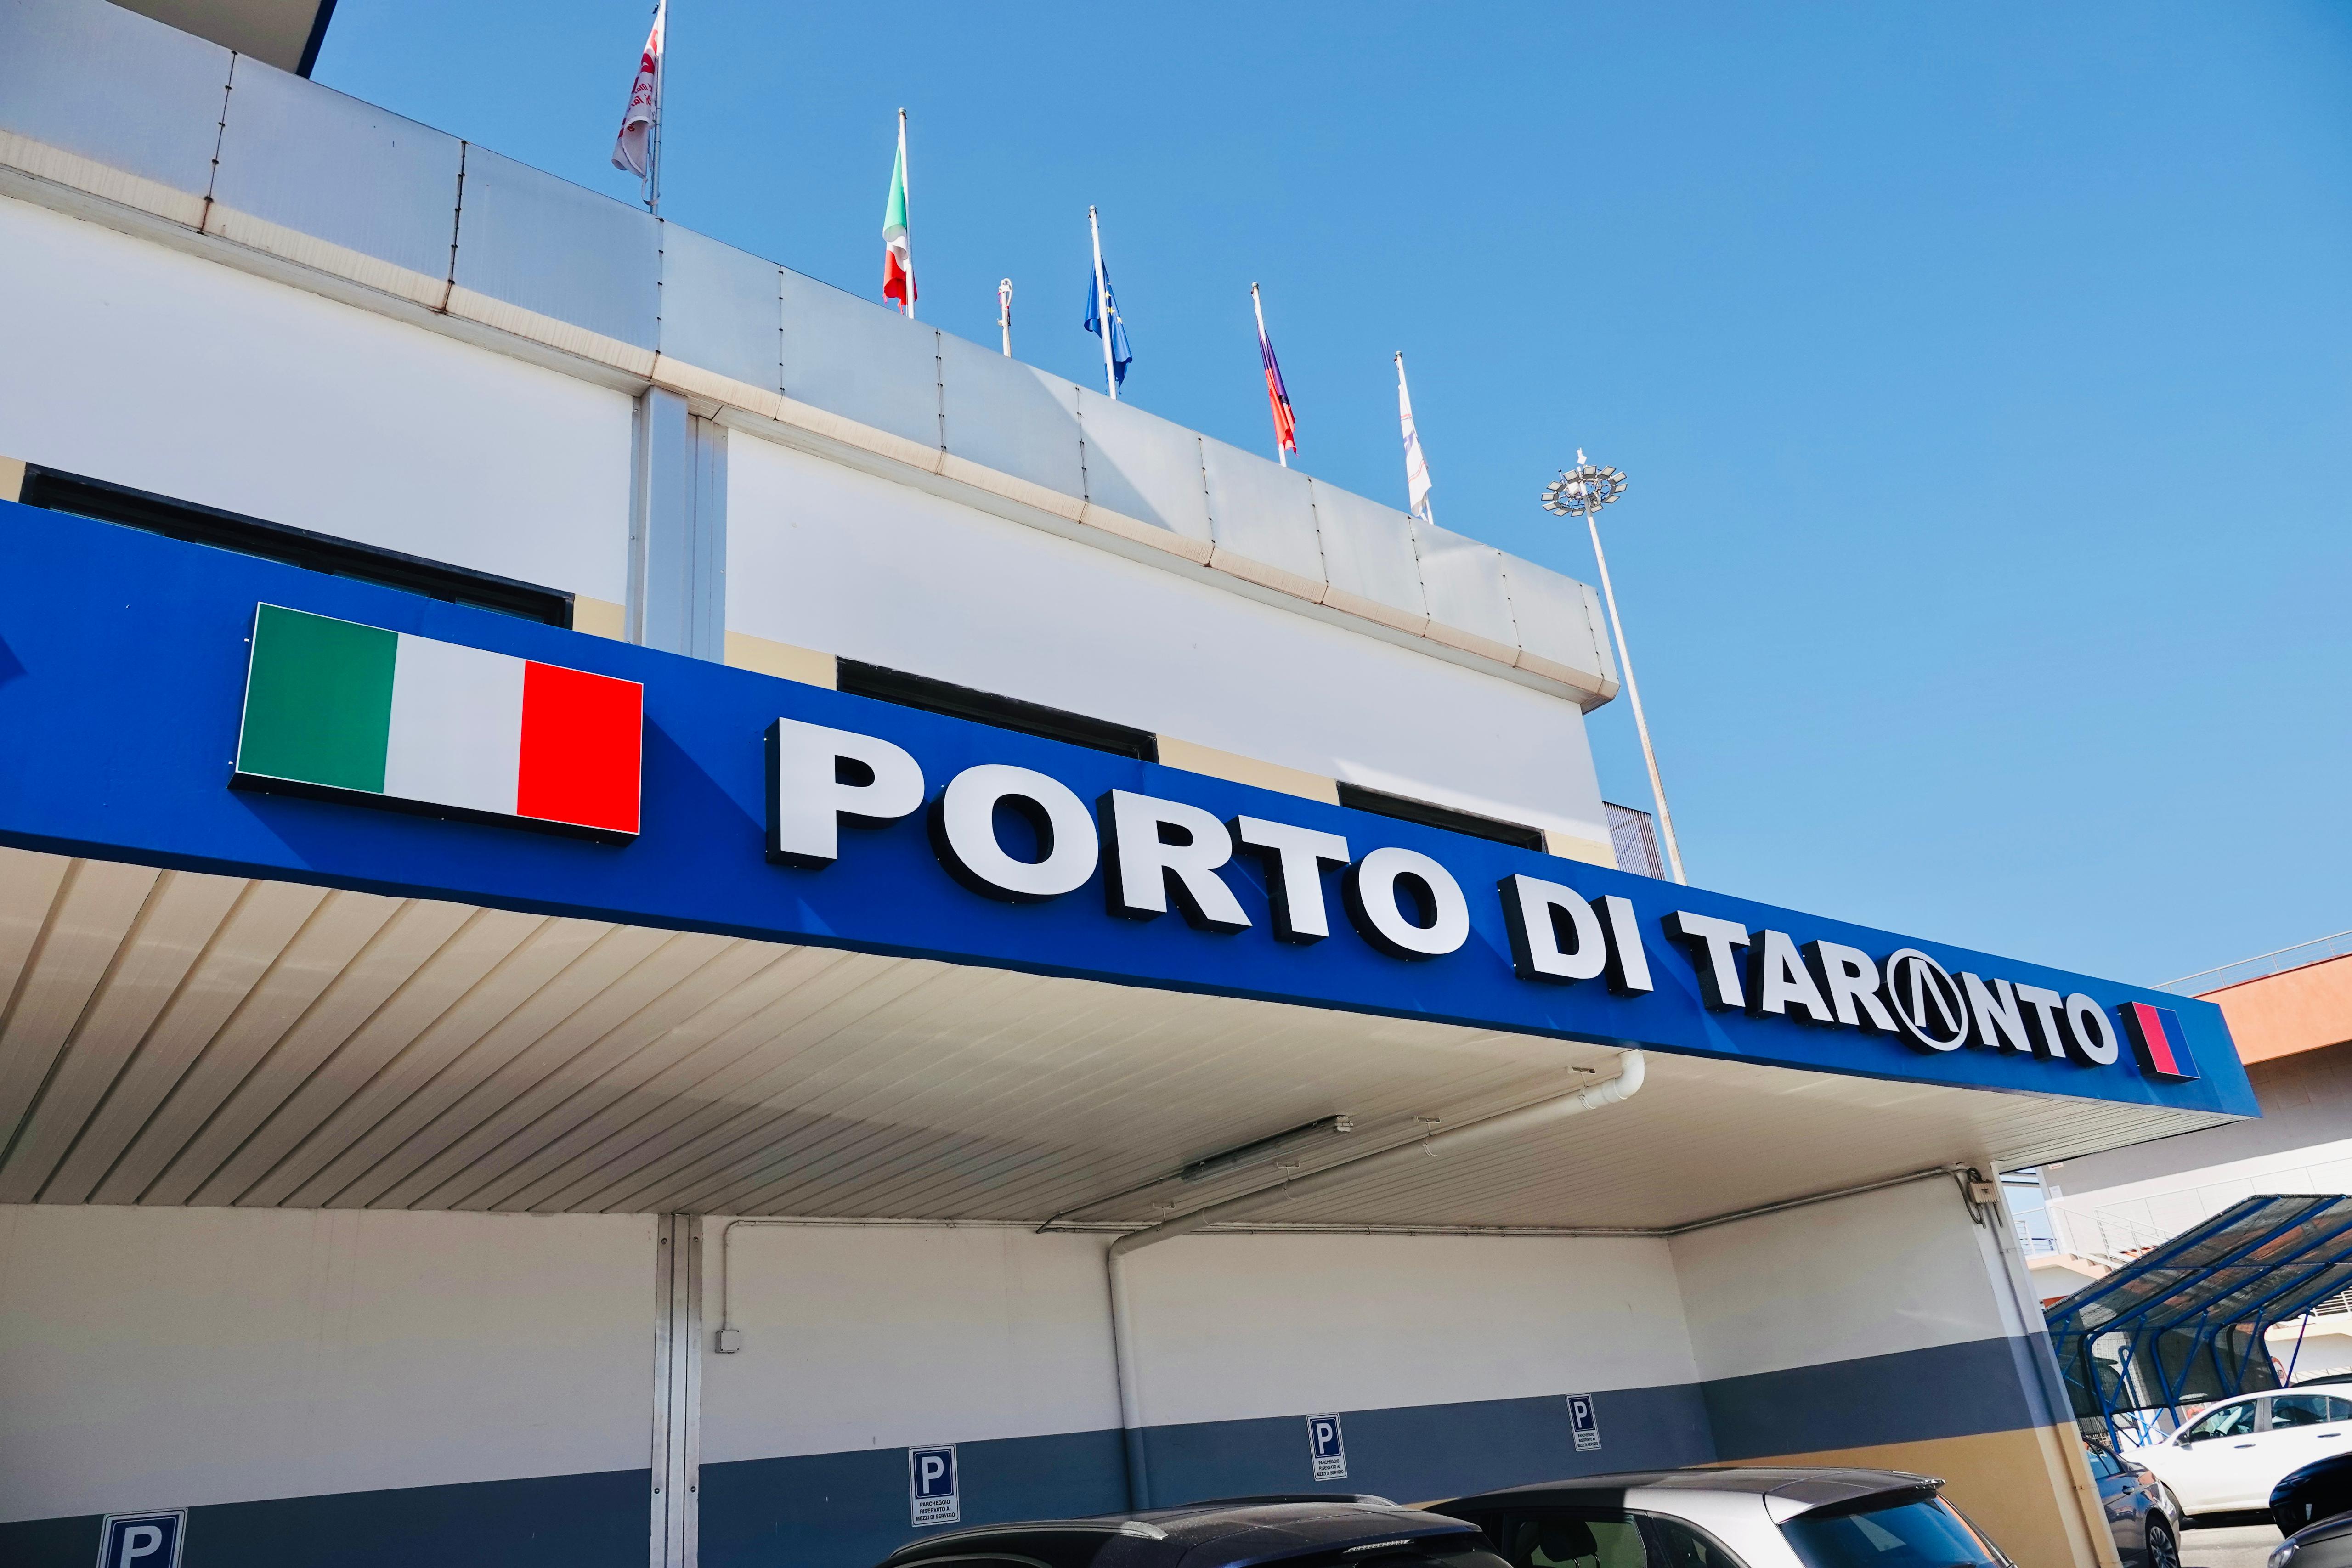 Galleria Lavoratori portuali di Taranto, oggi a Taranto la sottoscrizione del Protocollo d’Intesa tra Regione Puglia e Autorità di Sistema Portuale del Mar Ionio - Diapositiva 4 di 12